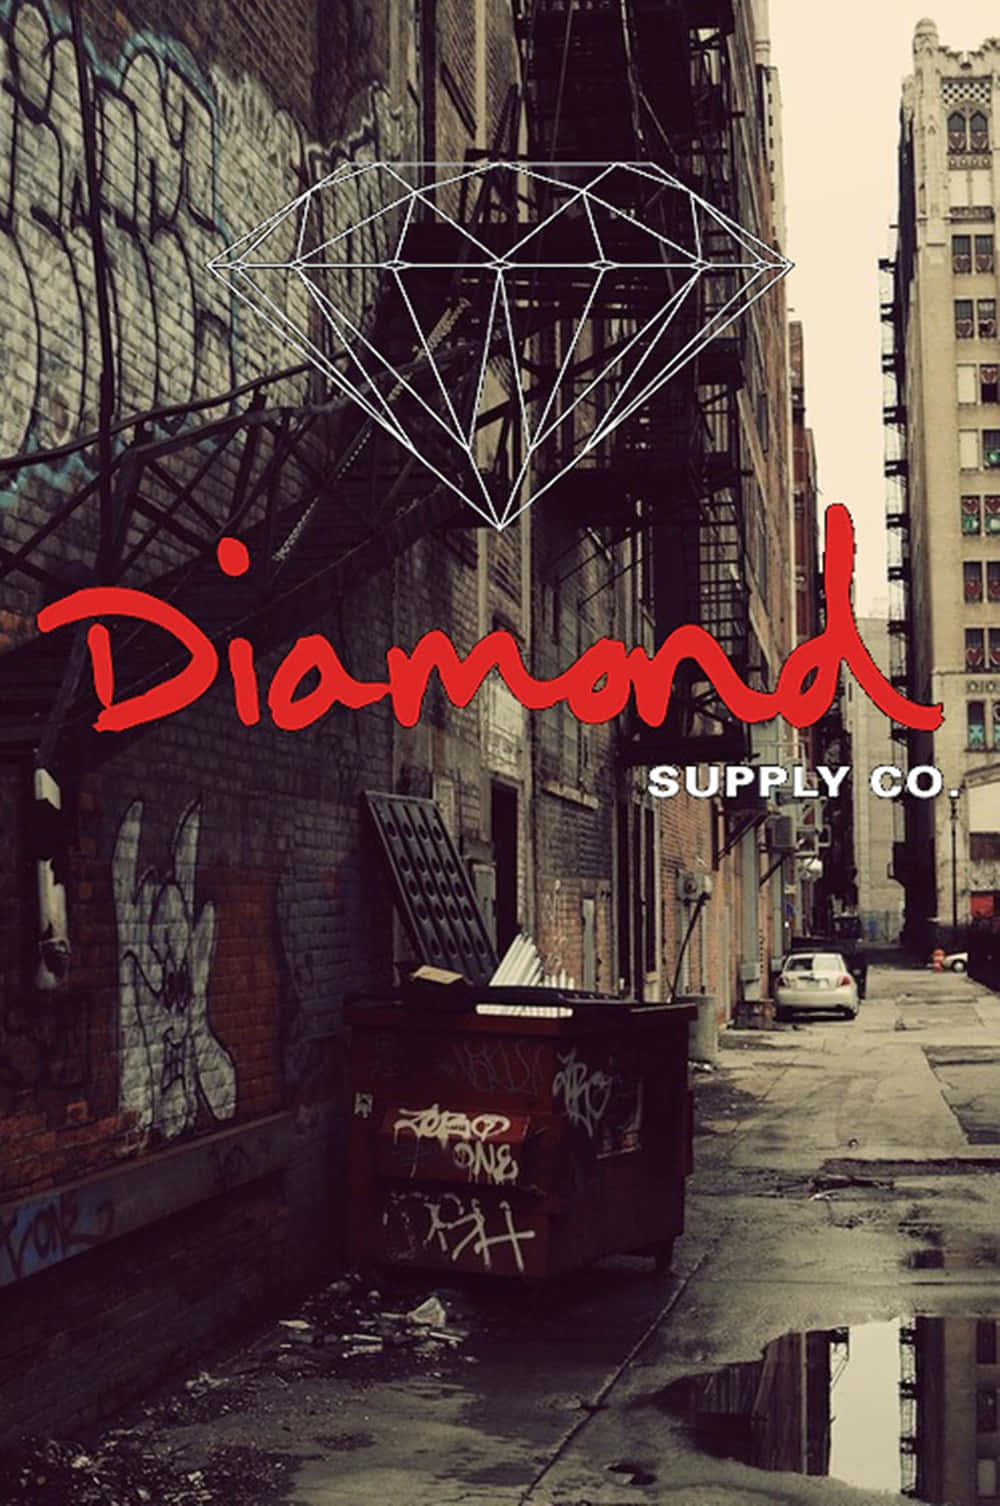 Diamondsupply Co - Un Edificio Ricoperto Di Graffiti. Sfondo